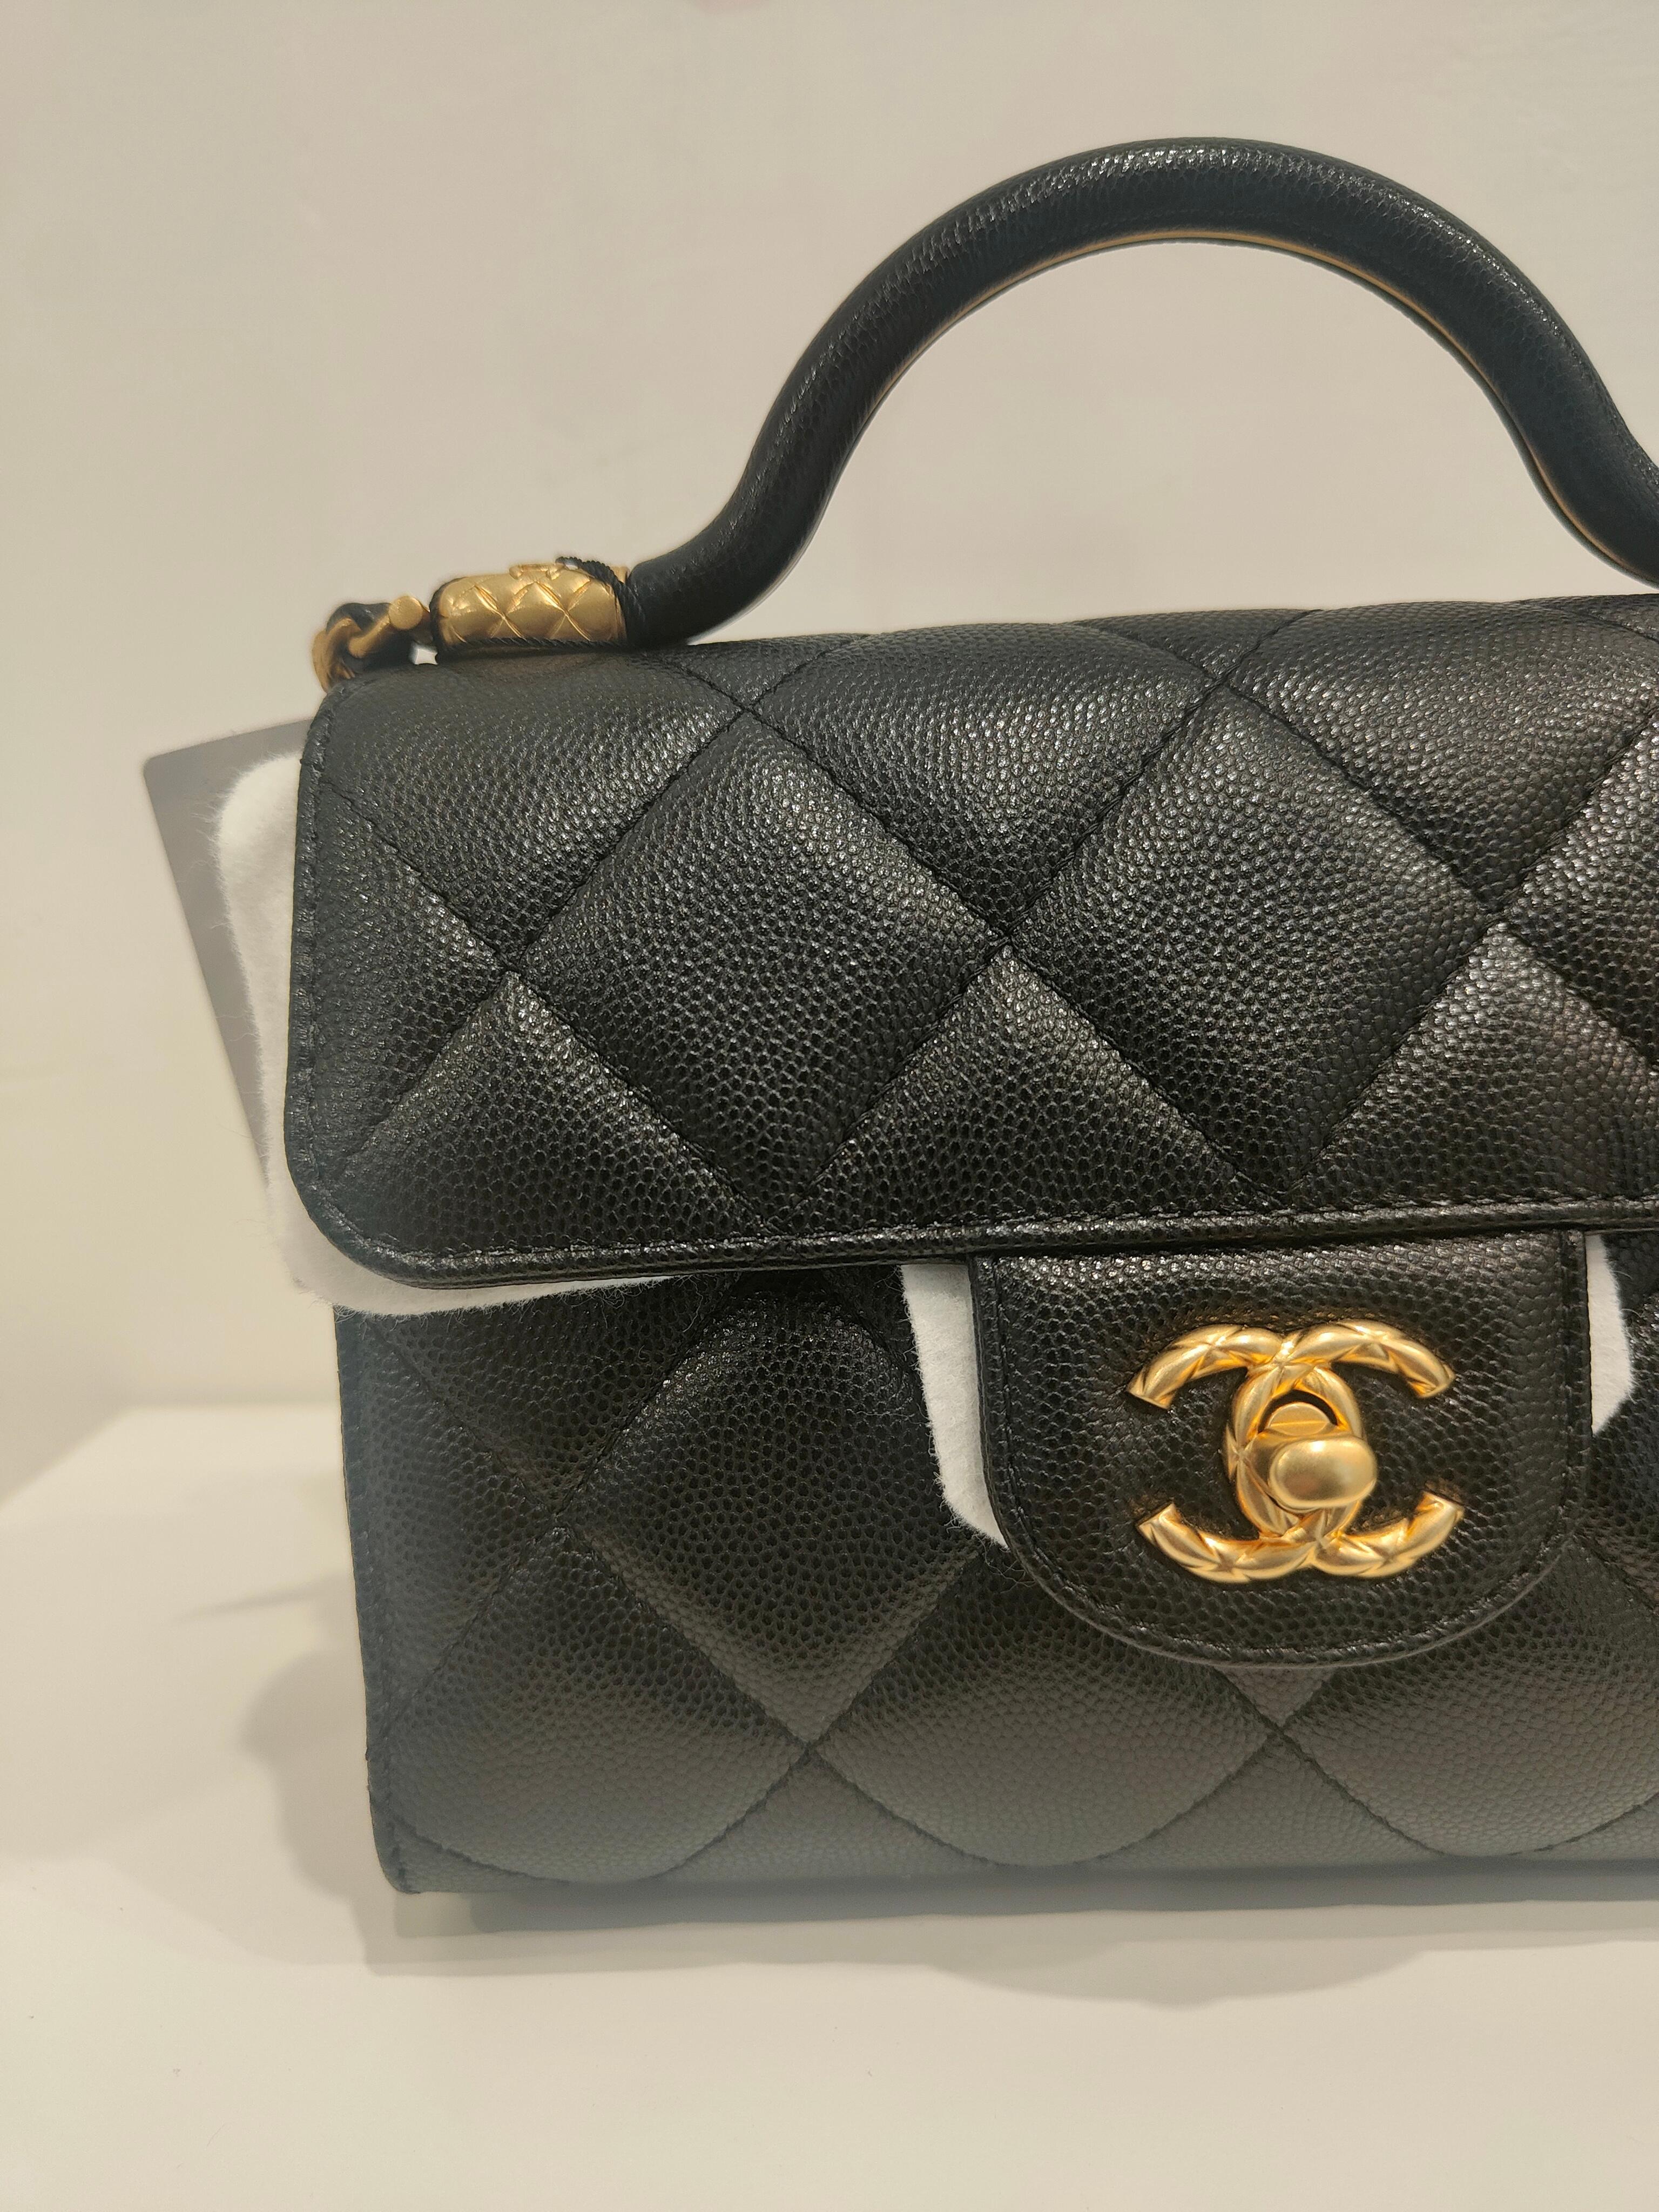 Chanel black caviar leather Gold hardware shoulder bag NWOT 8